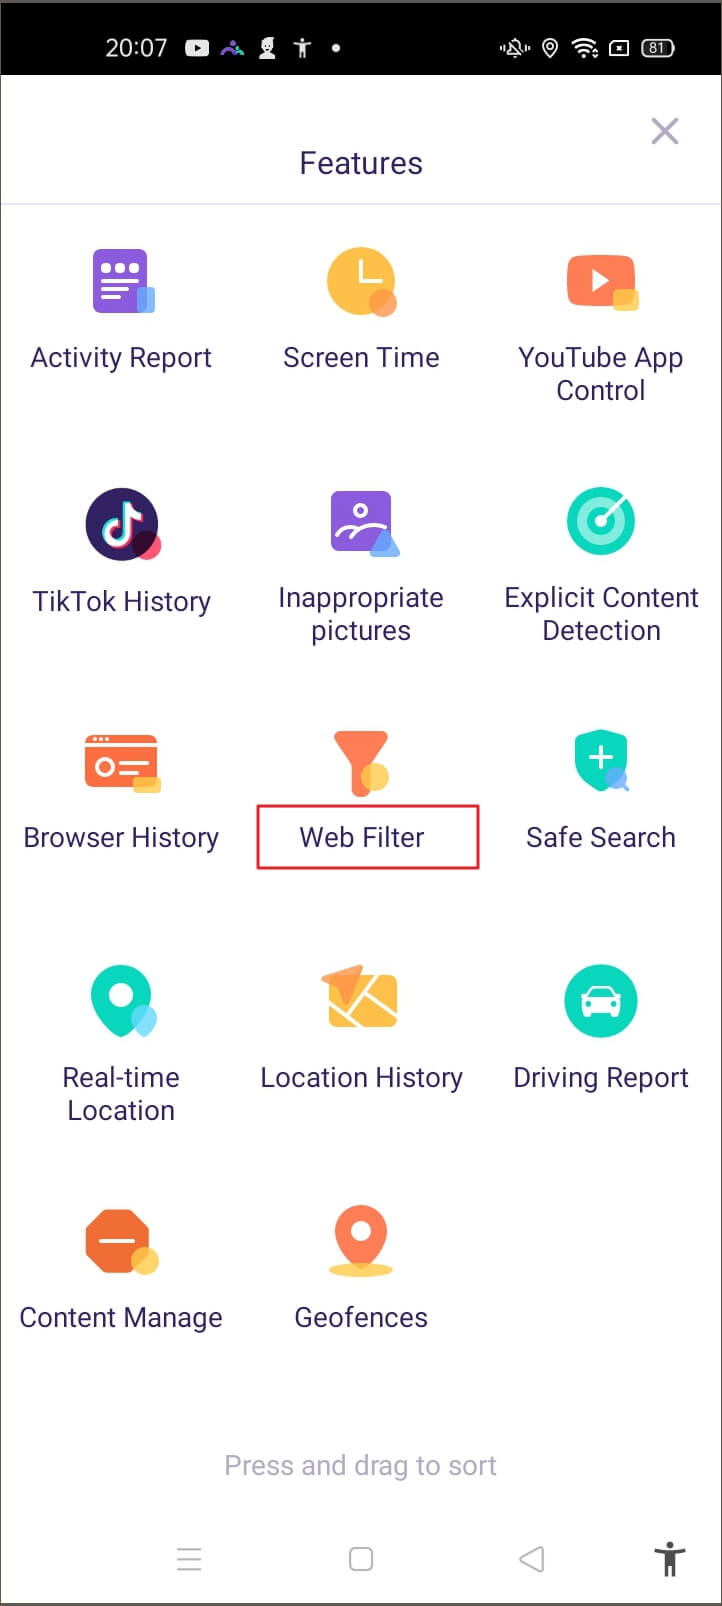 FamiSafe Web Filter